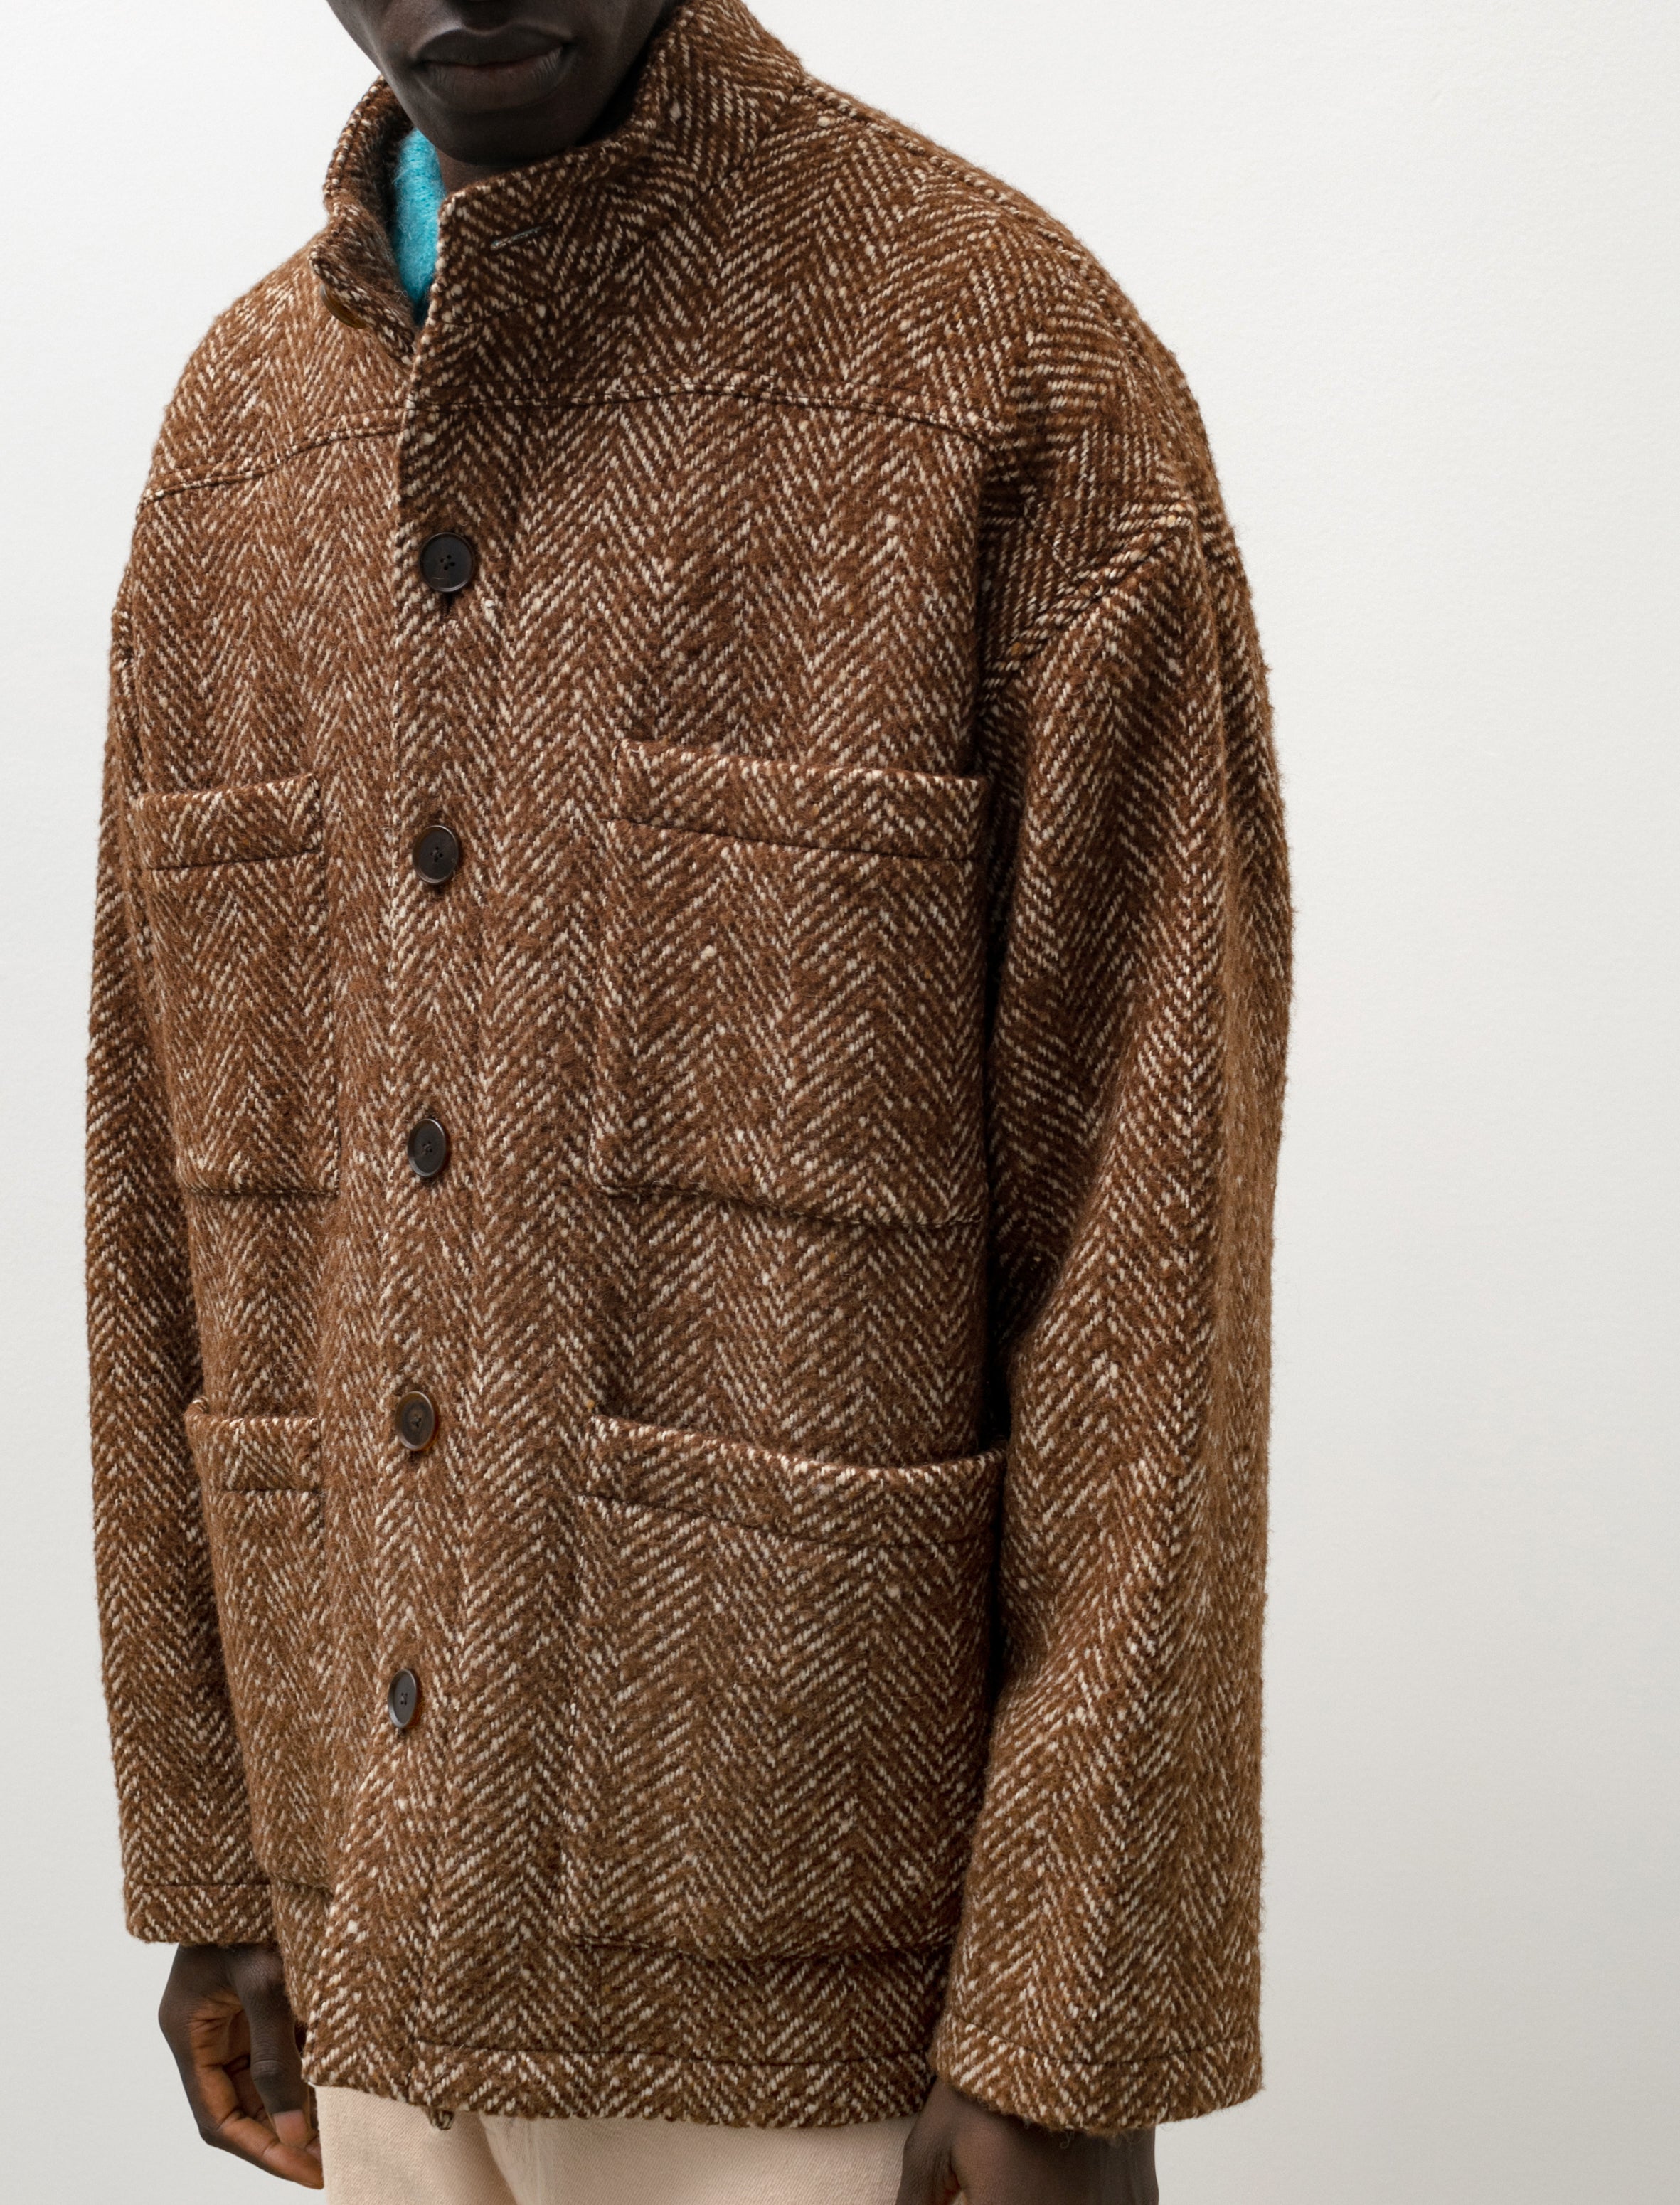 Wool Alpaca Herringbone Tweed Blouson